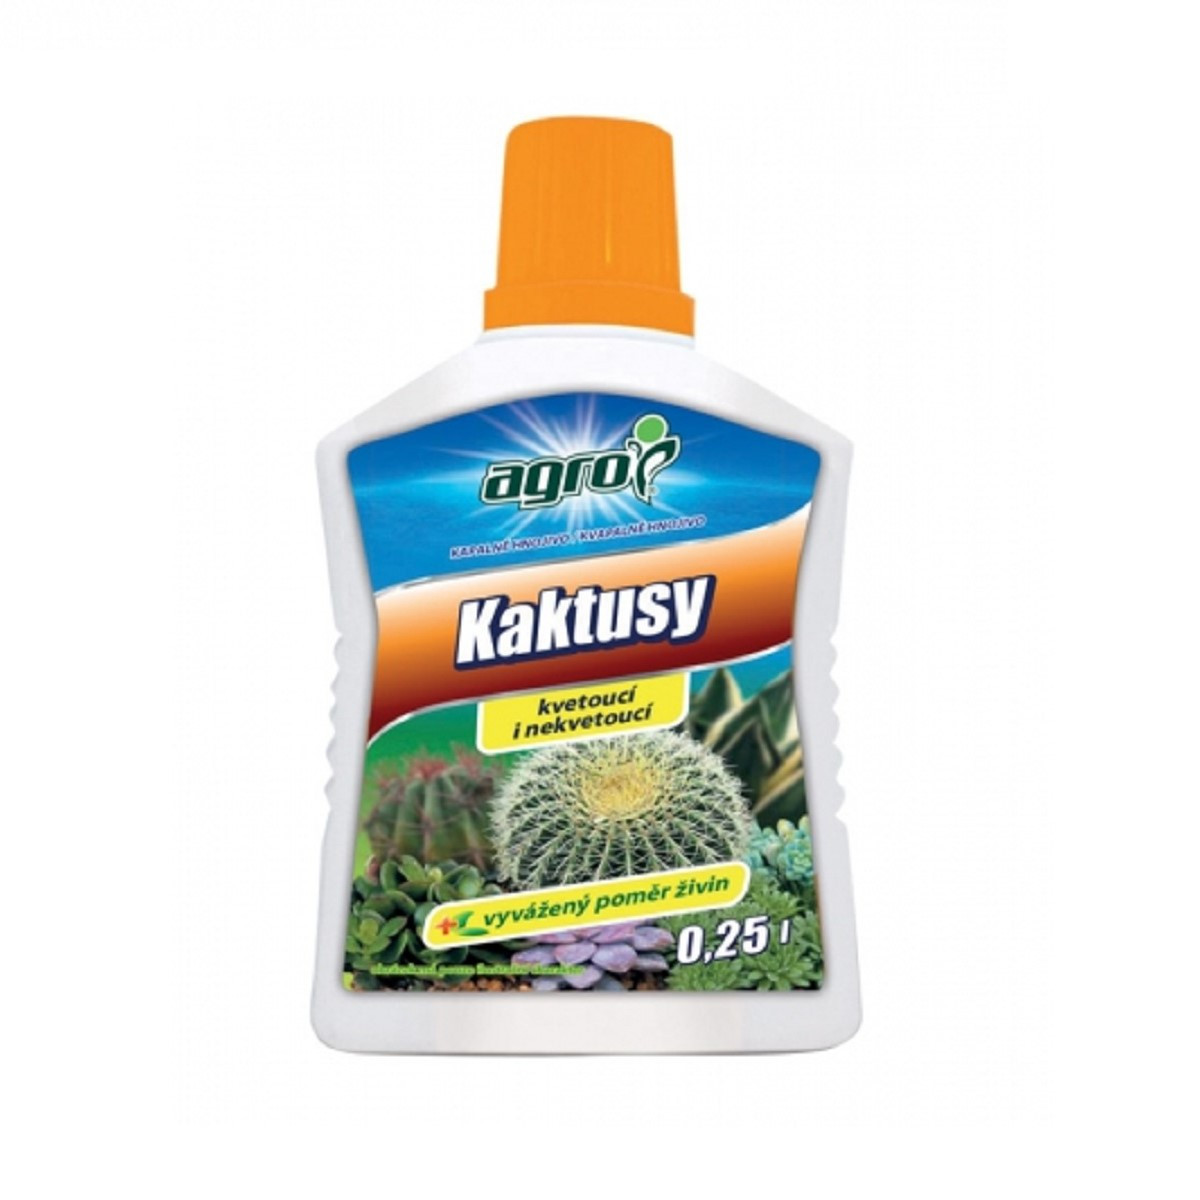 Hnojivo pro kaktusy a sukulenty - Agro - prodej hnojiv - 250 ml